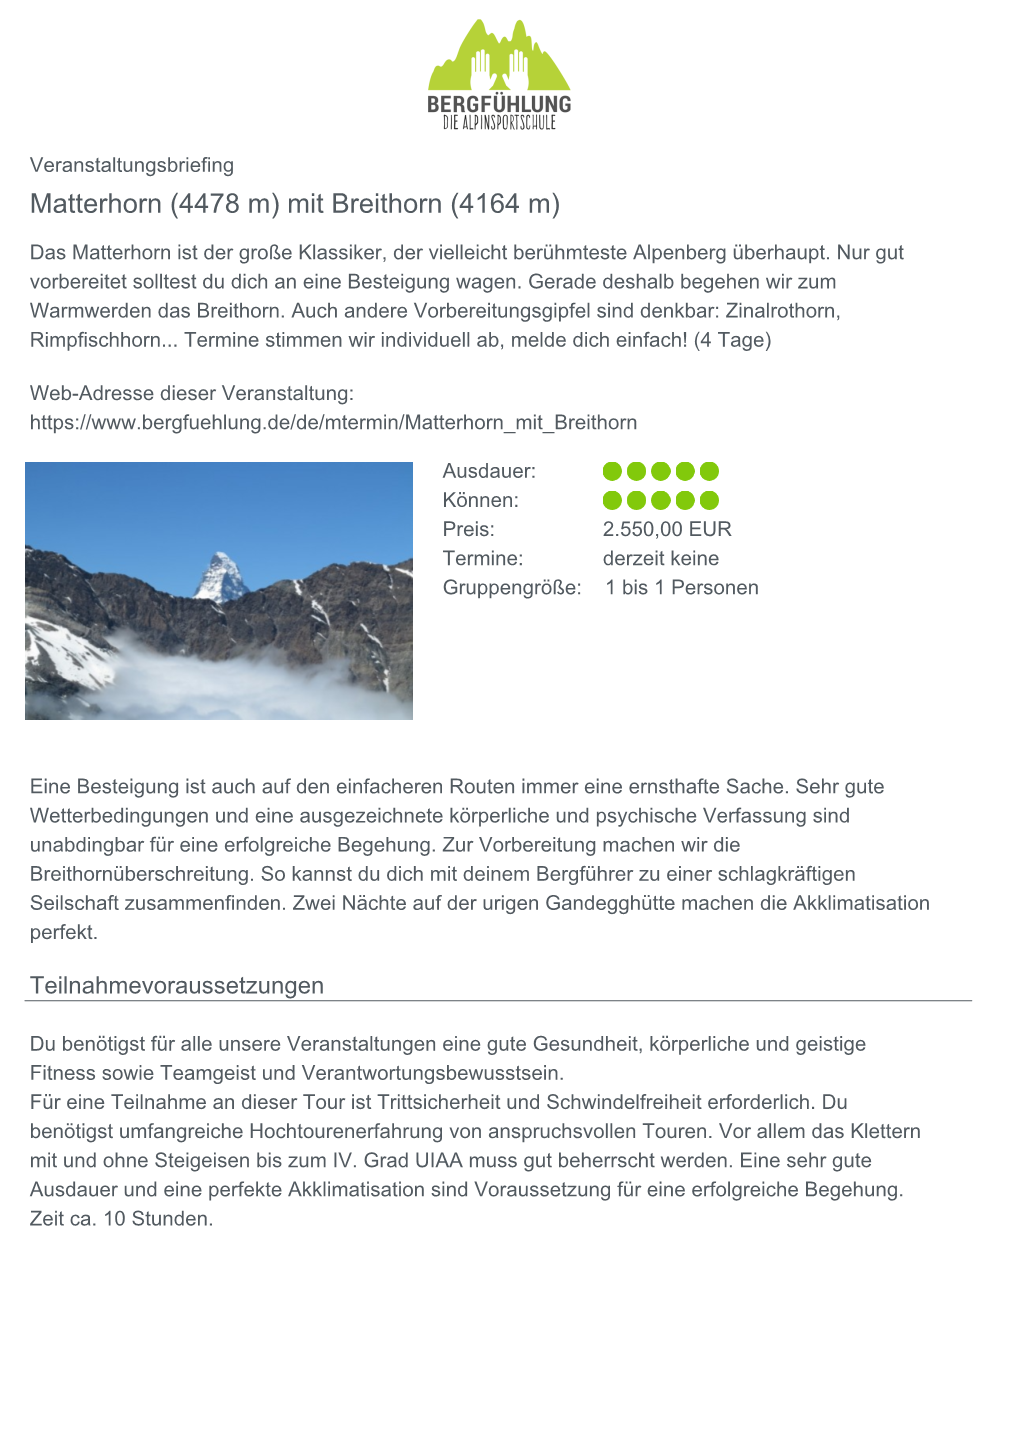 Matterhorn (4478 M) Mit Breithorn (4164 M)